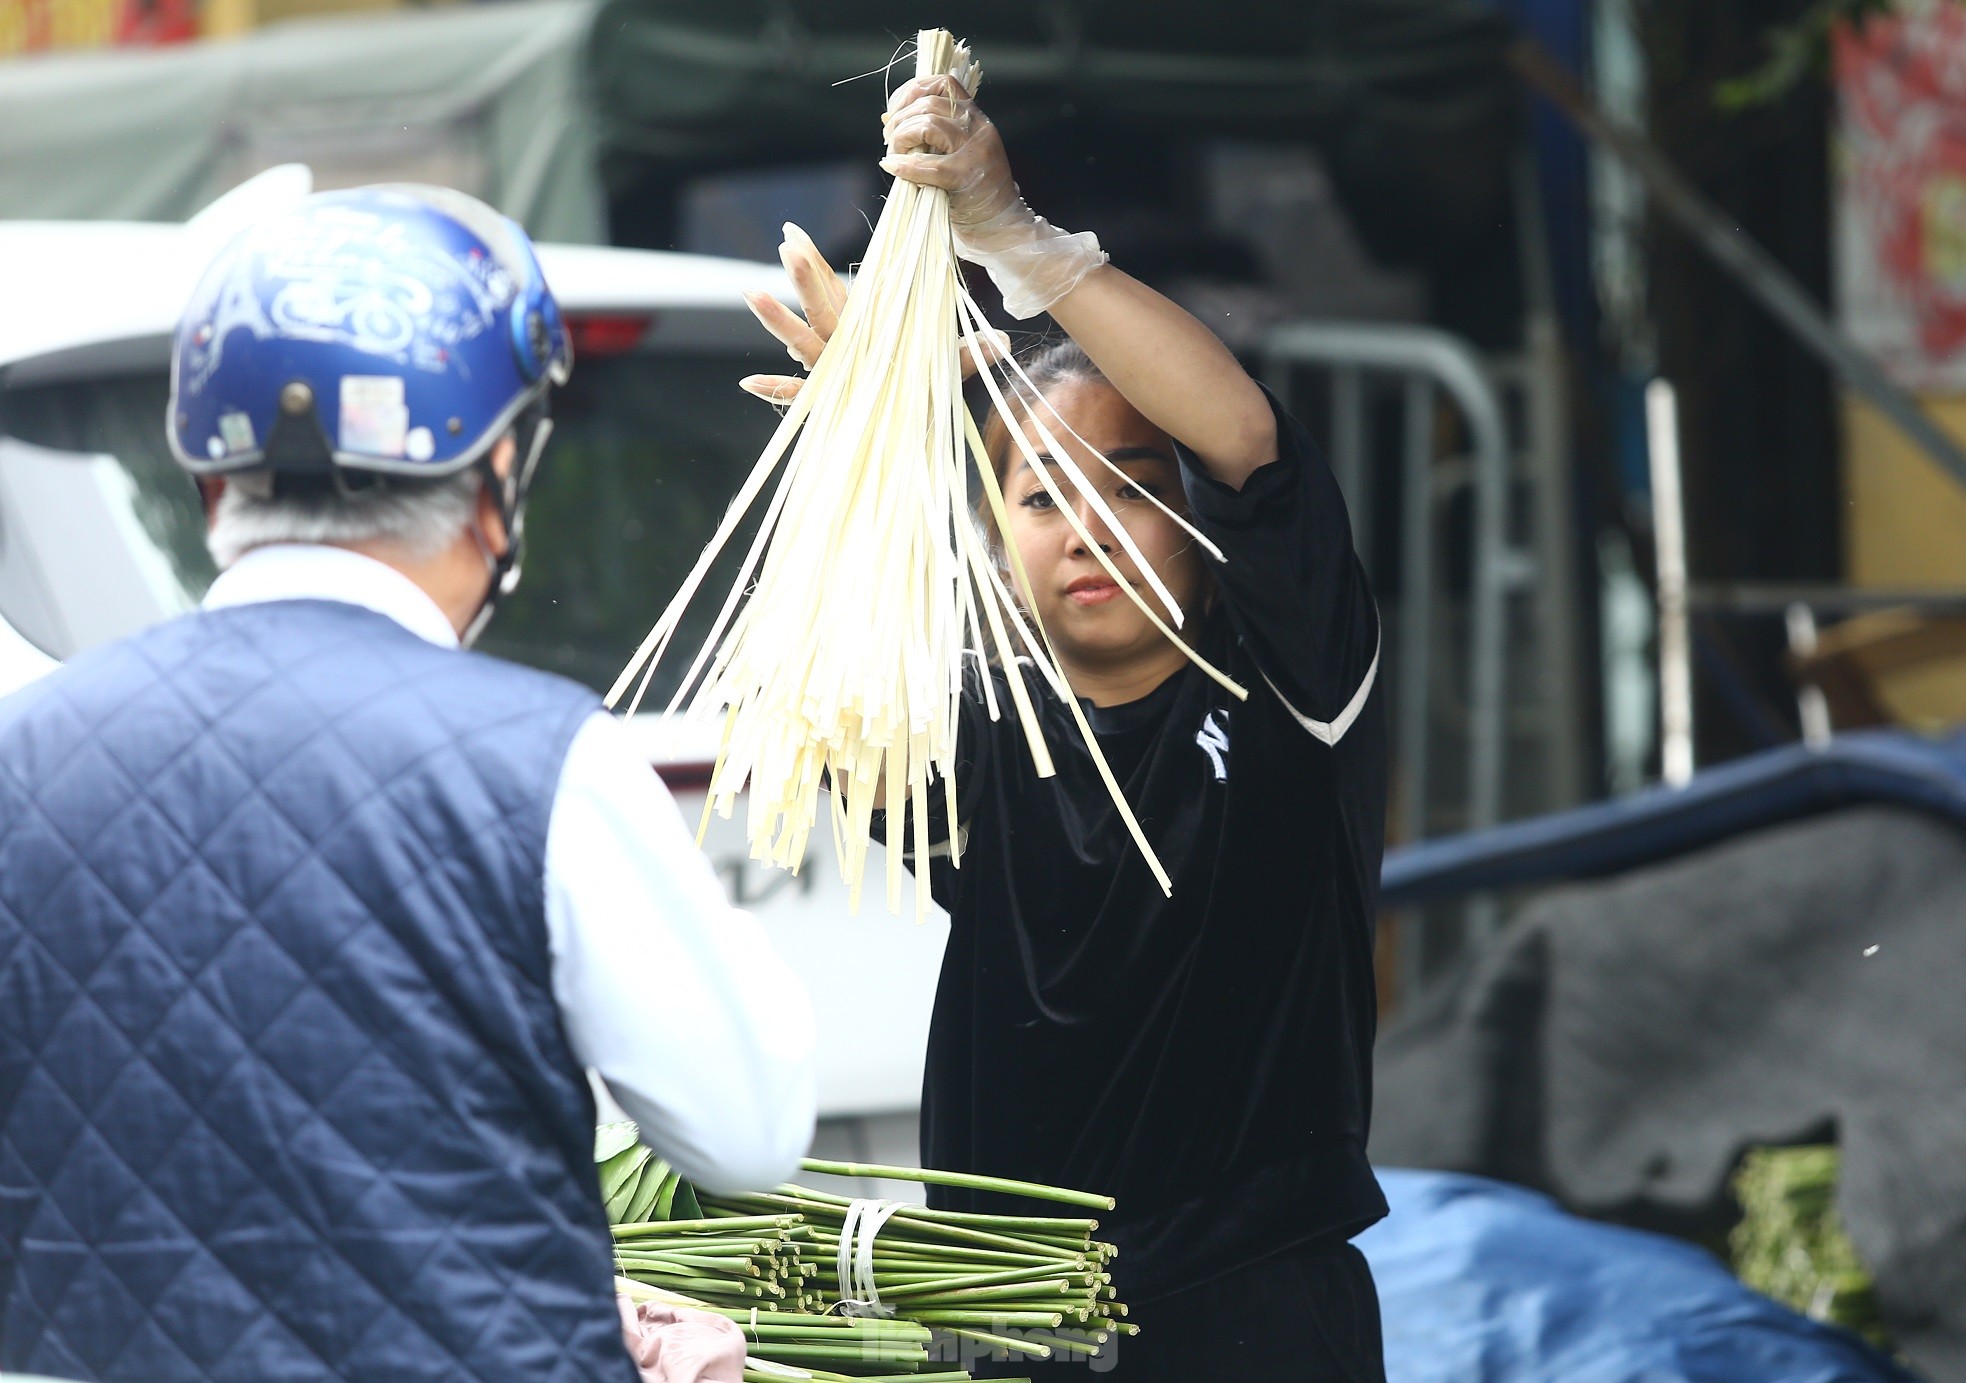 Chợ lá dong lâu đời nhất Hà Nội: Ngày bán hàng vạn lá, thu về hàng chục triệu - Ảnh 7.